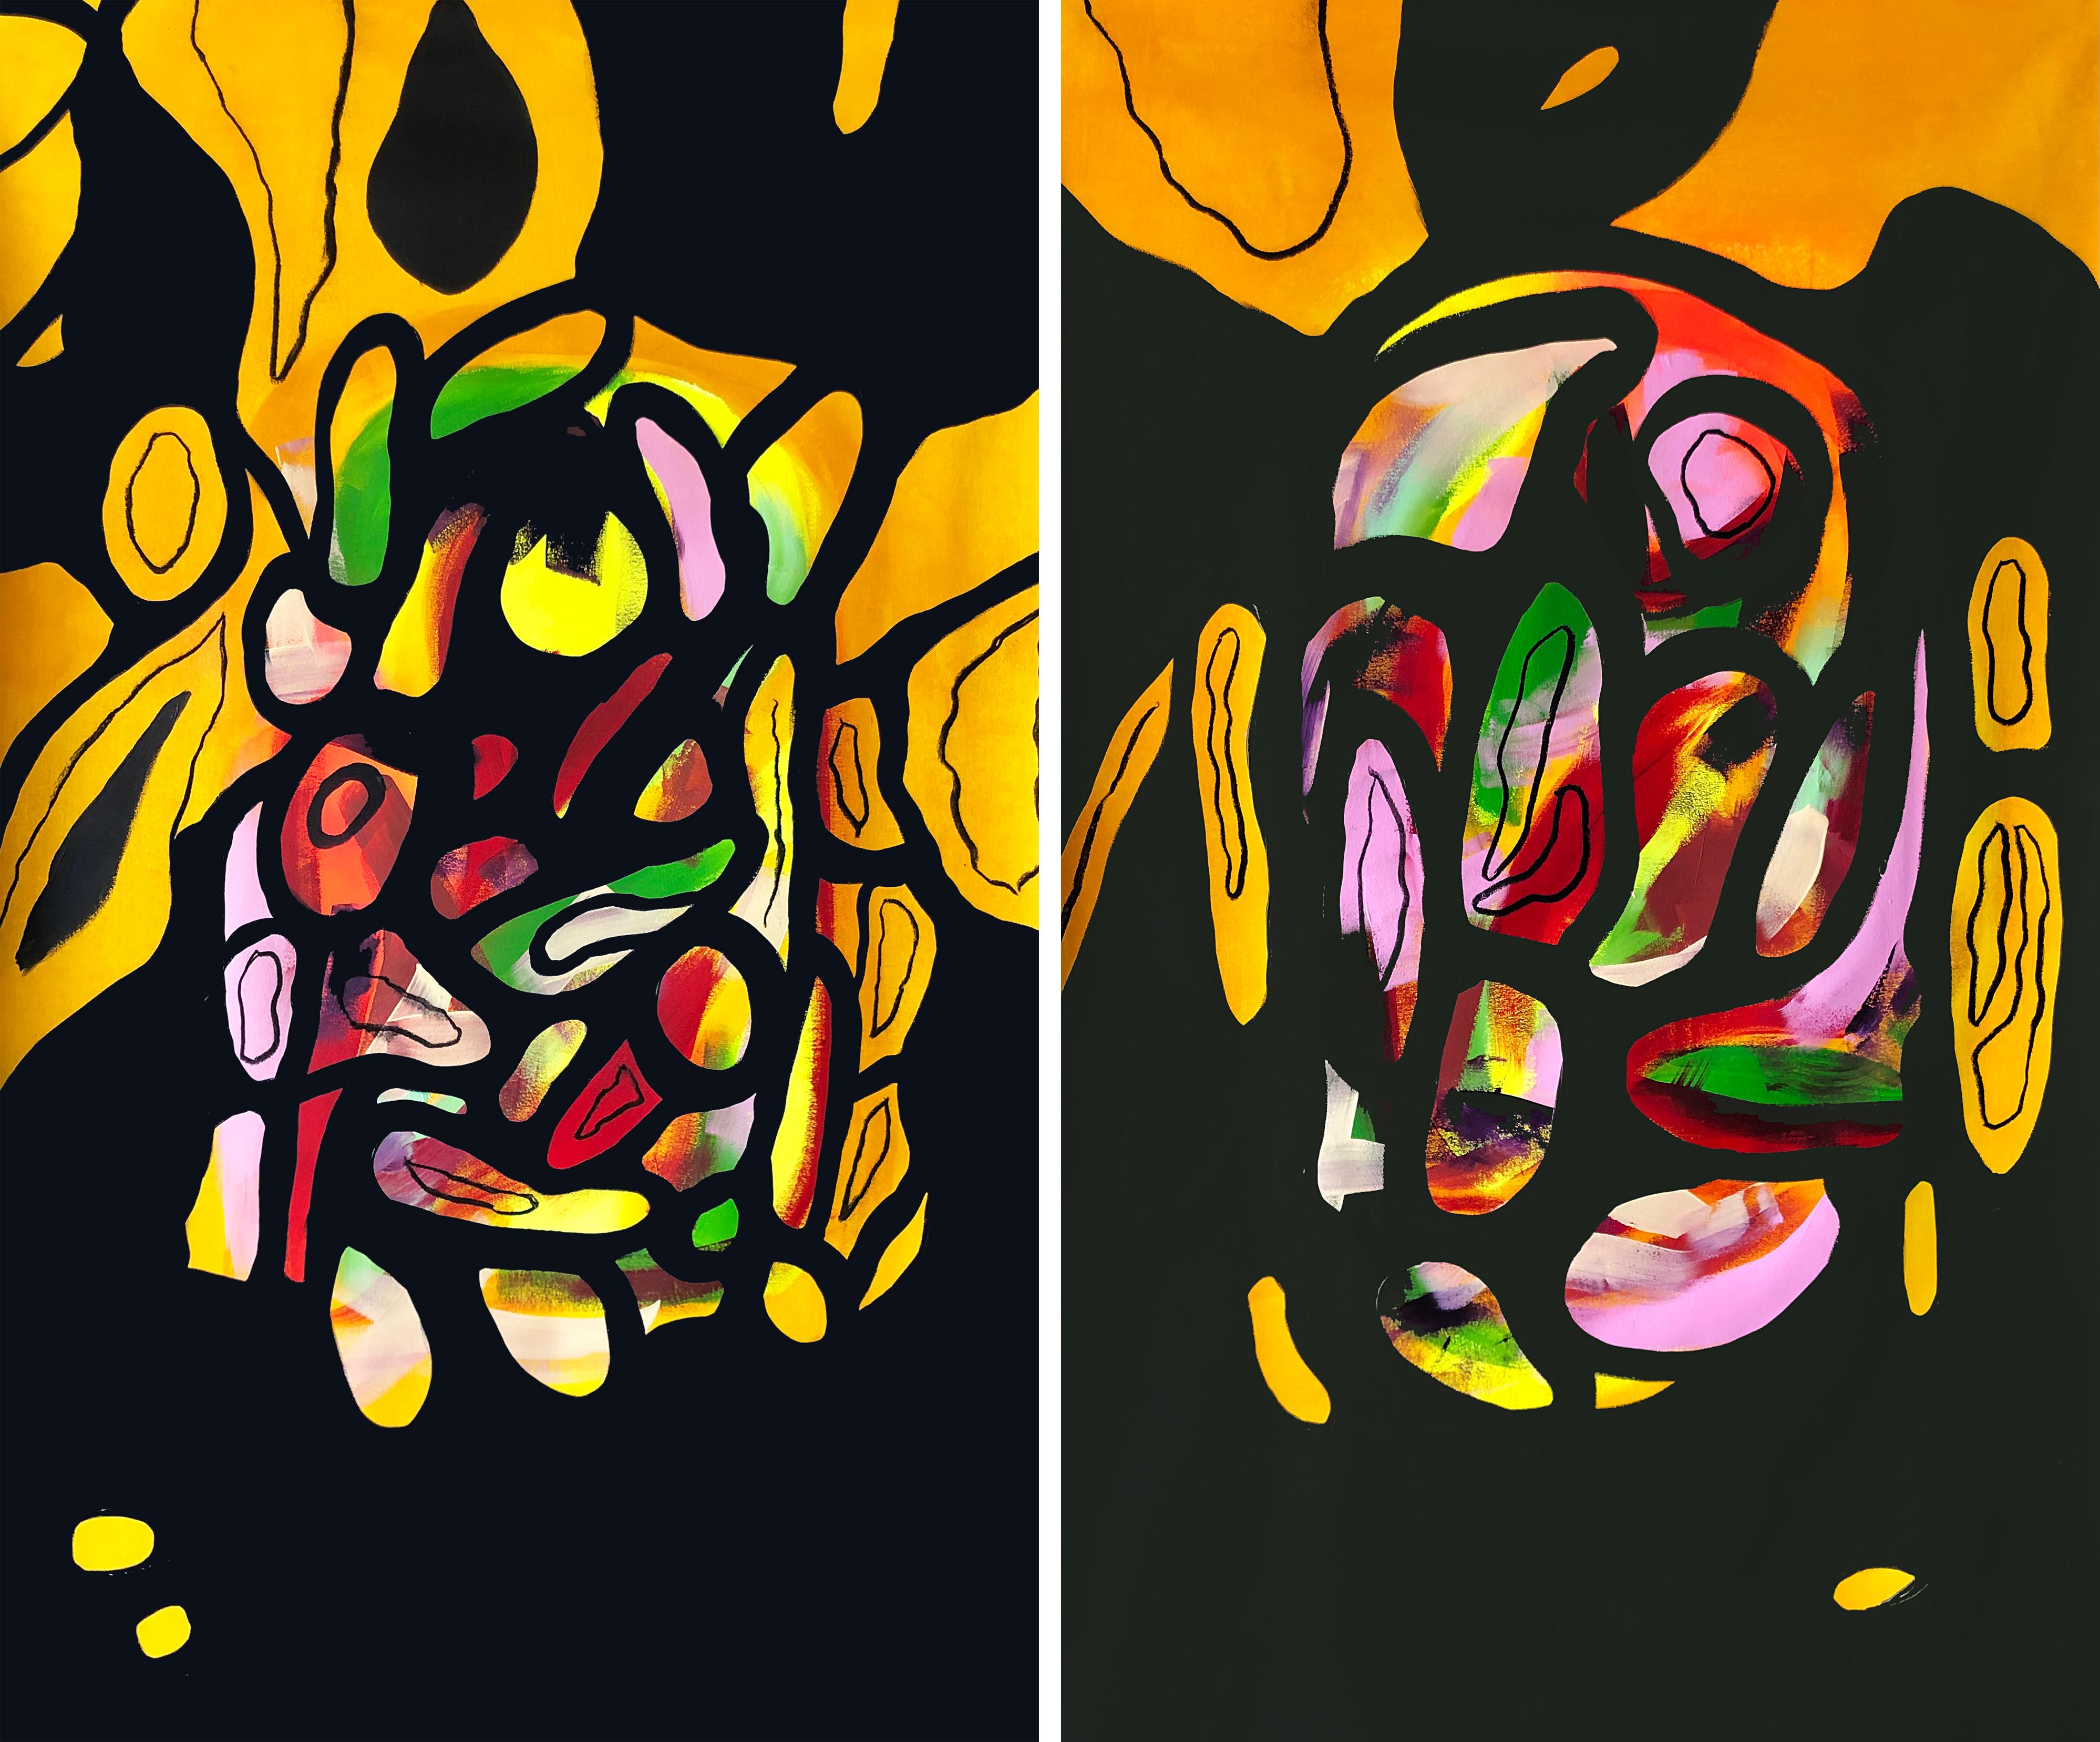  SILENCIO #1 und #2 Diptychon. Abstraktes Gemälde auf Leinwand – Mixed Media Art von Alec Franco 